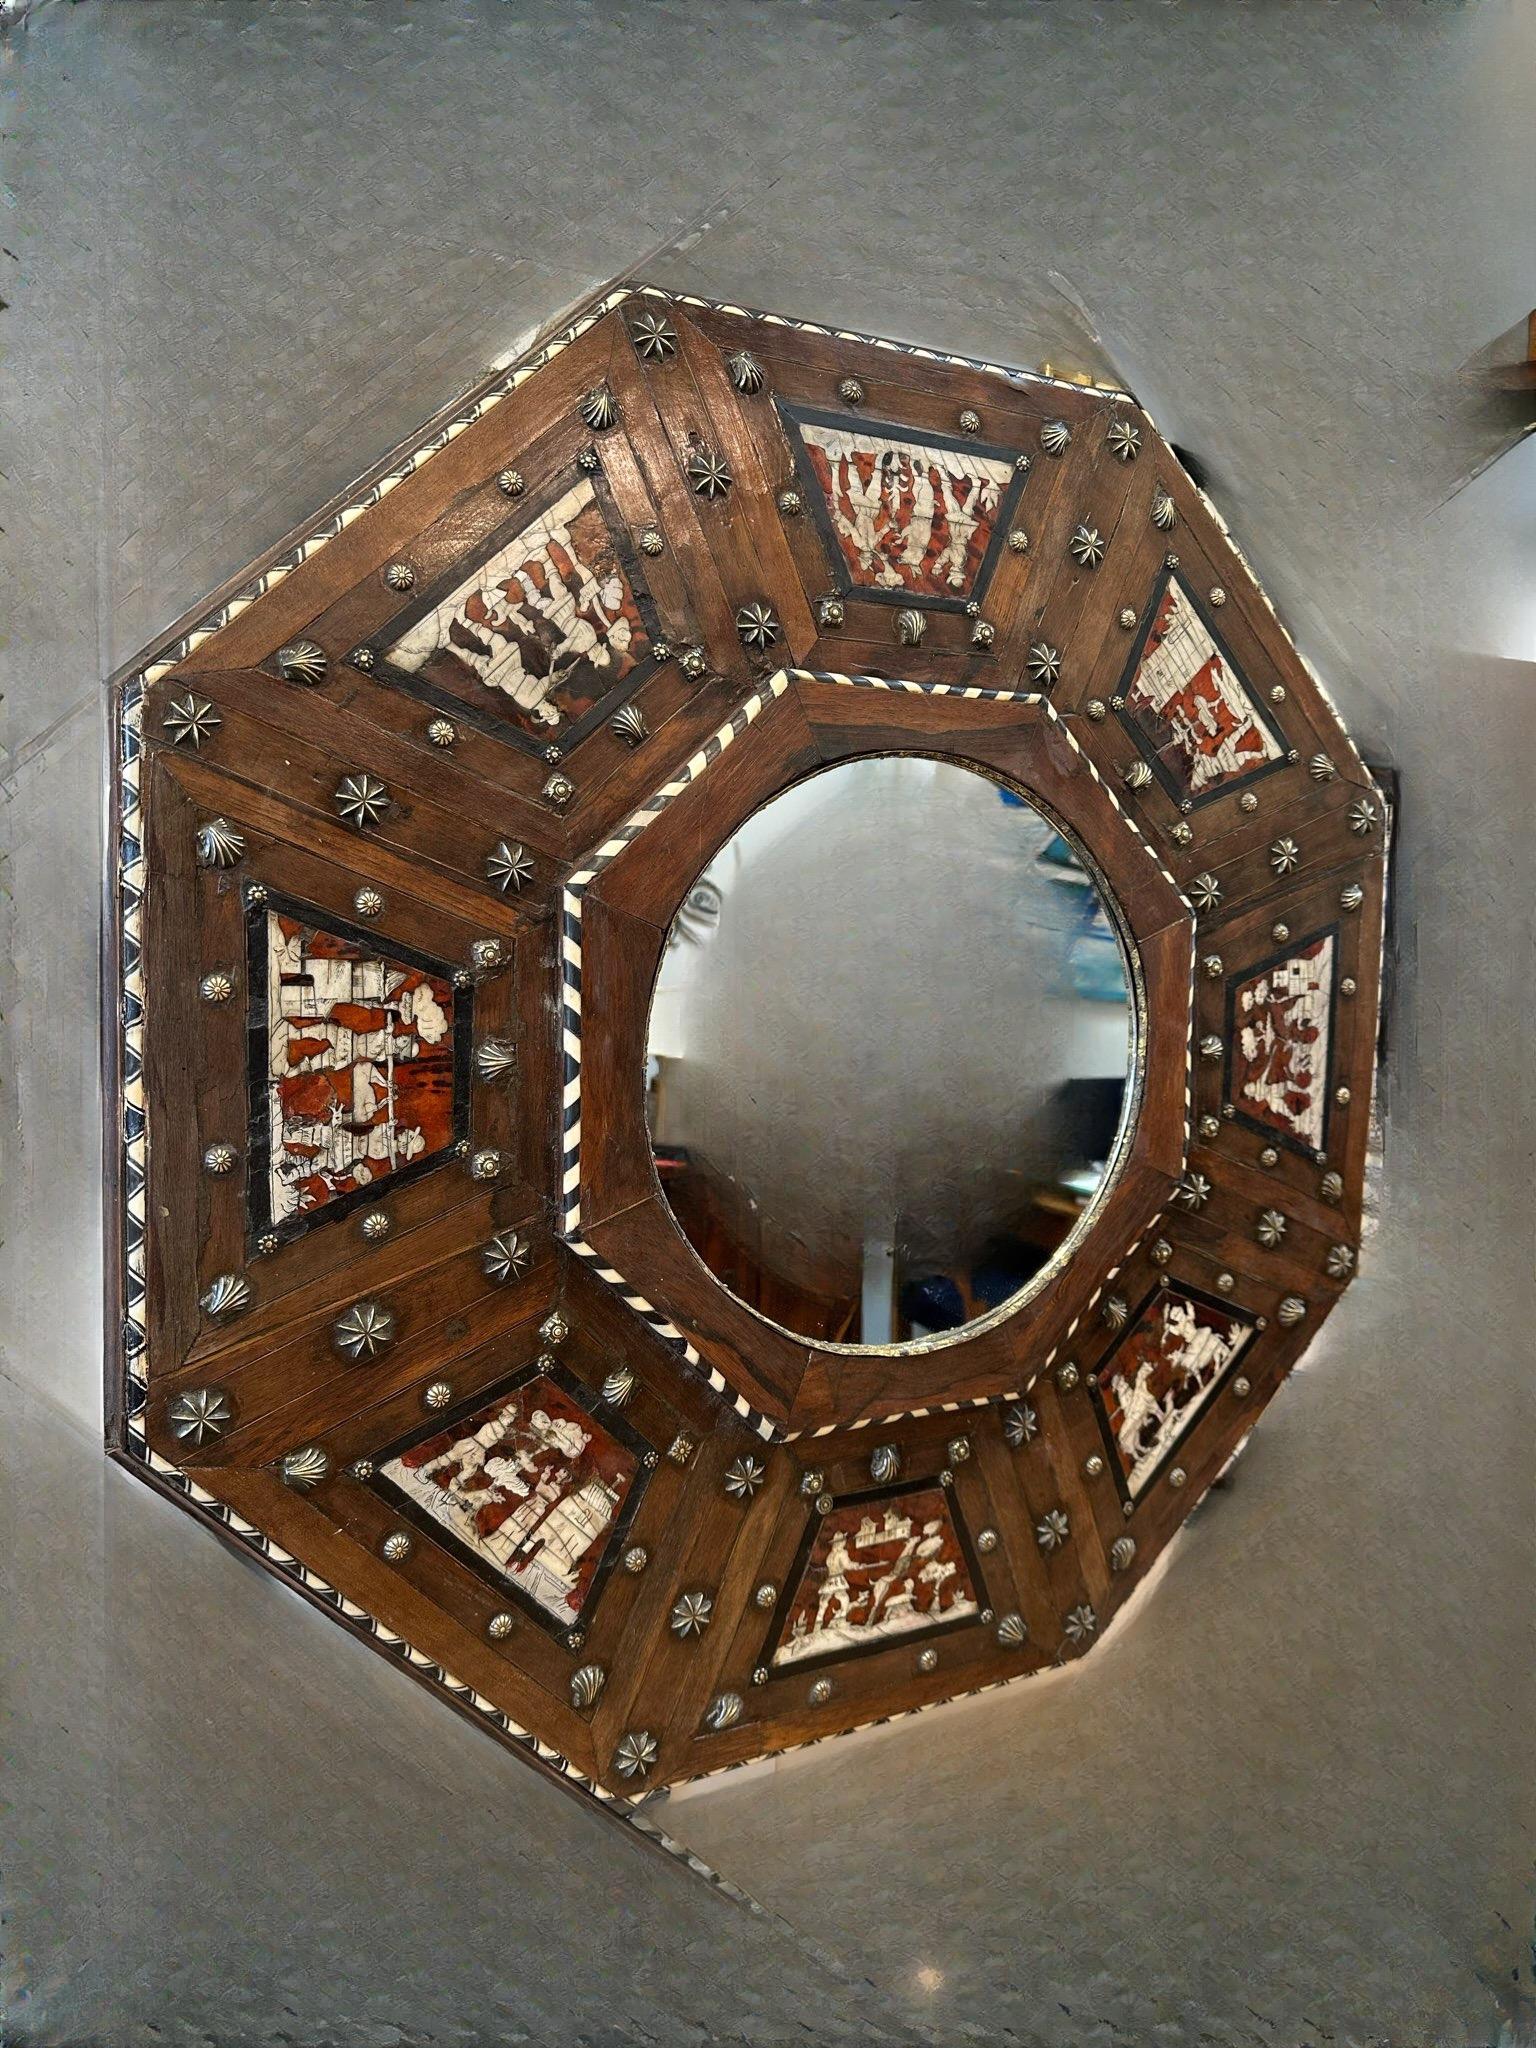 Rare miroir baroque octogonal en bois marqueté du 17e siècle. Fabriqué en noyer et en palissandre profondément patinés, avec des incrustations complexes de motifs médiévaux en ivoire et en écaille de tortue, et des accents de laiton, d'argent et